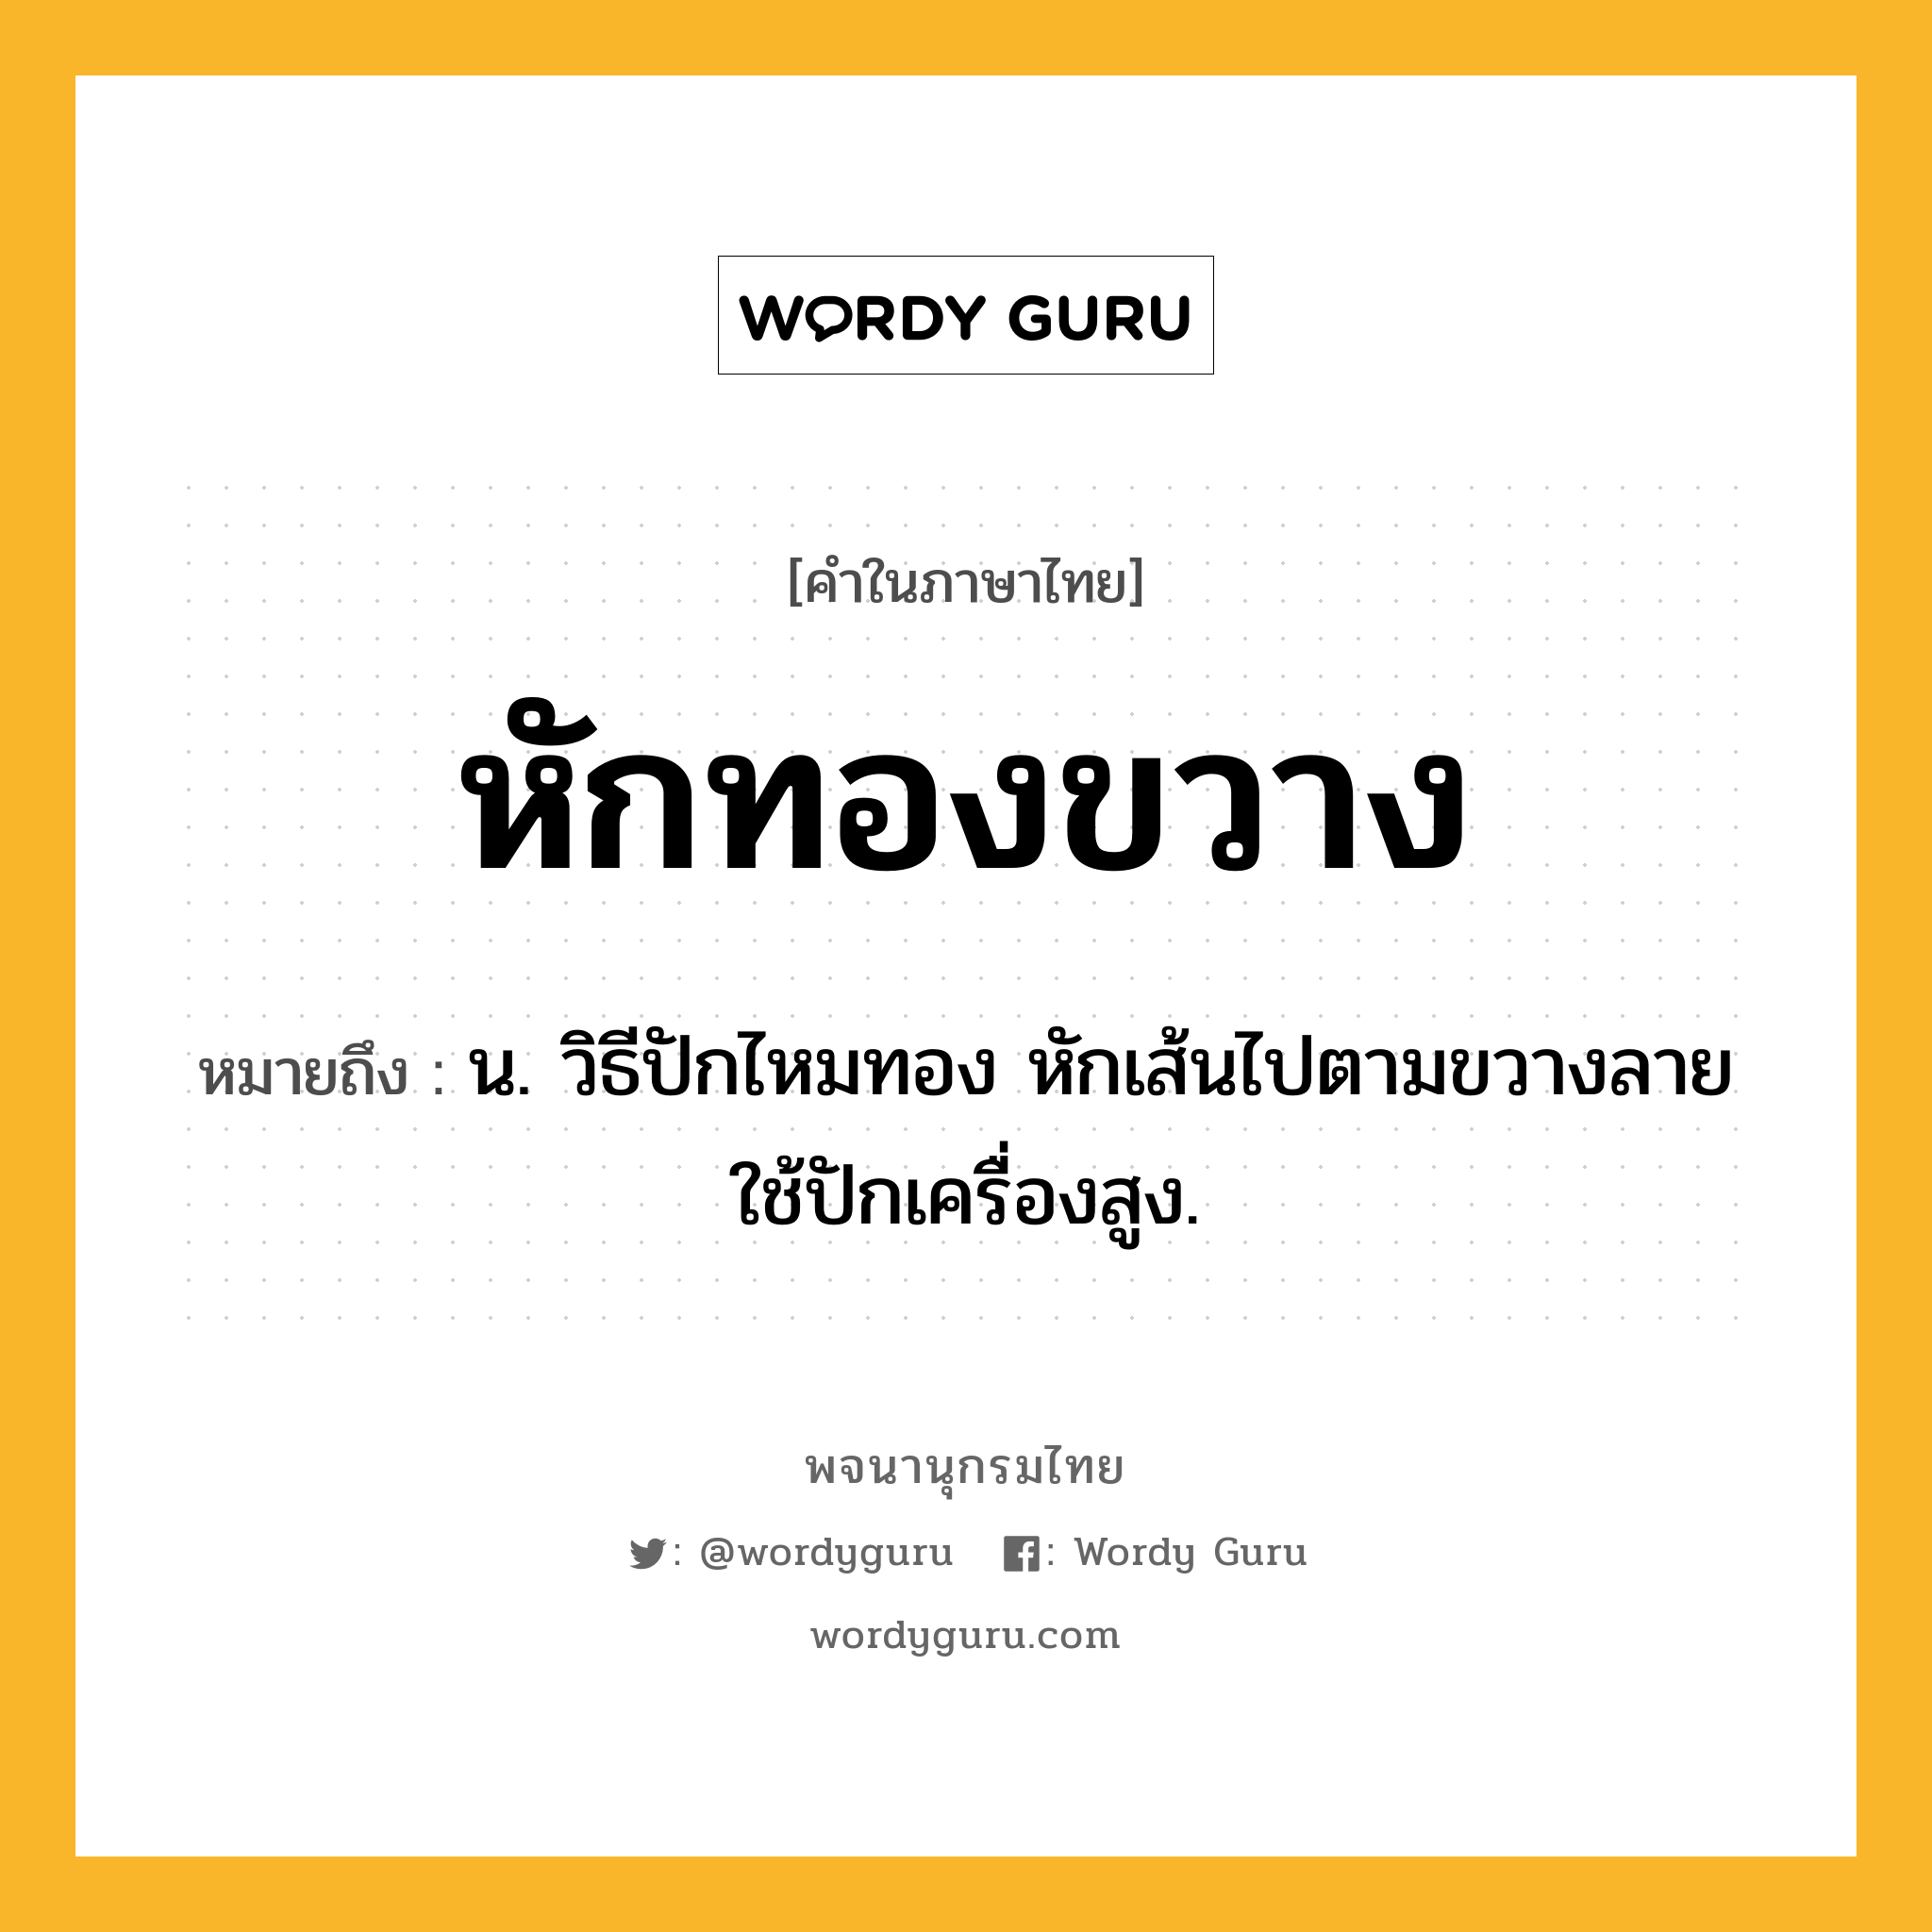 หักทองขวาง ความหมาย หมายถึงอะไร?, คำในภาษาไทย หักทองขวาง หมายถึง น. วิธีปักไหมทอง หักเส้นไปตามขวางลาย ใช้ปักเครื่องสูง.